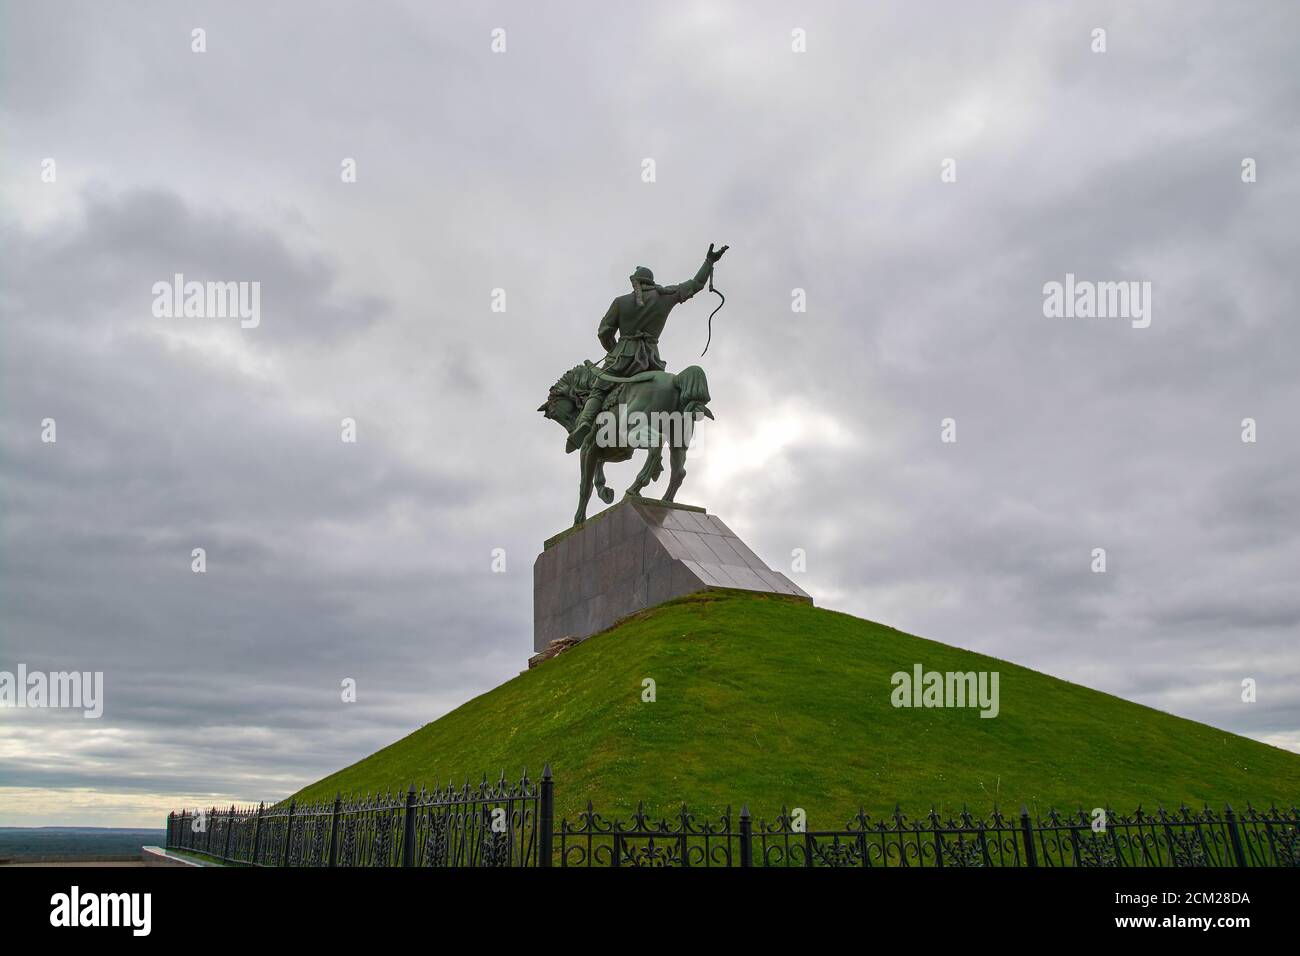 Ufa/Russia-09.01.2020:Denkmal für Salavat Julaev auf dem Hintergrund der Wolken Stockfoto